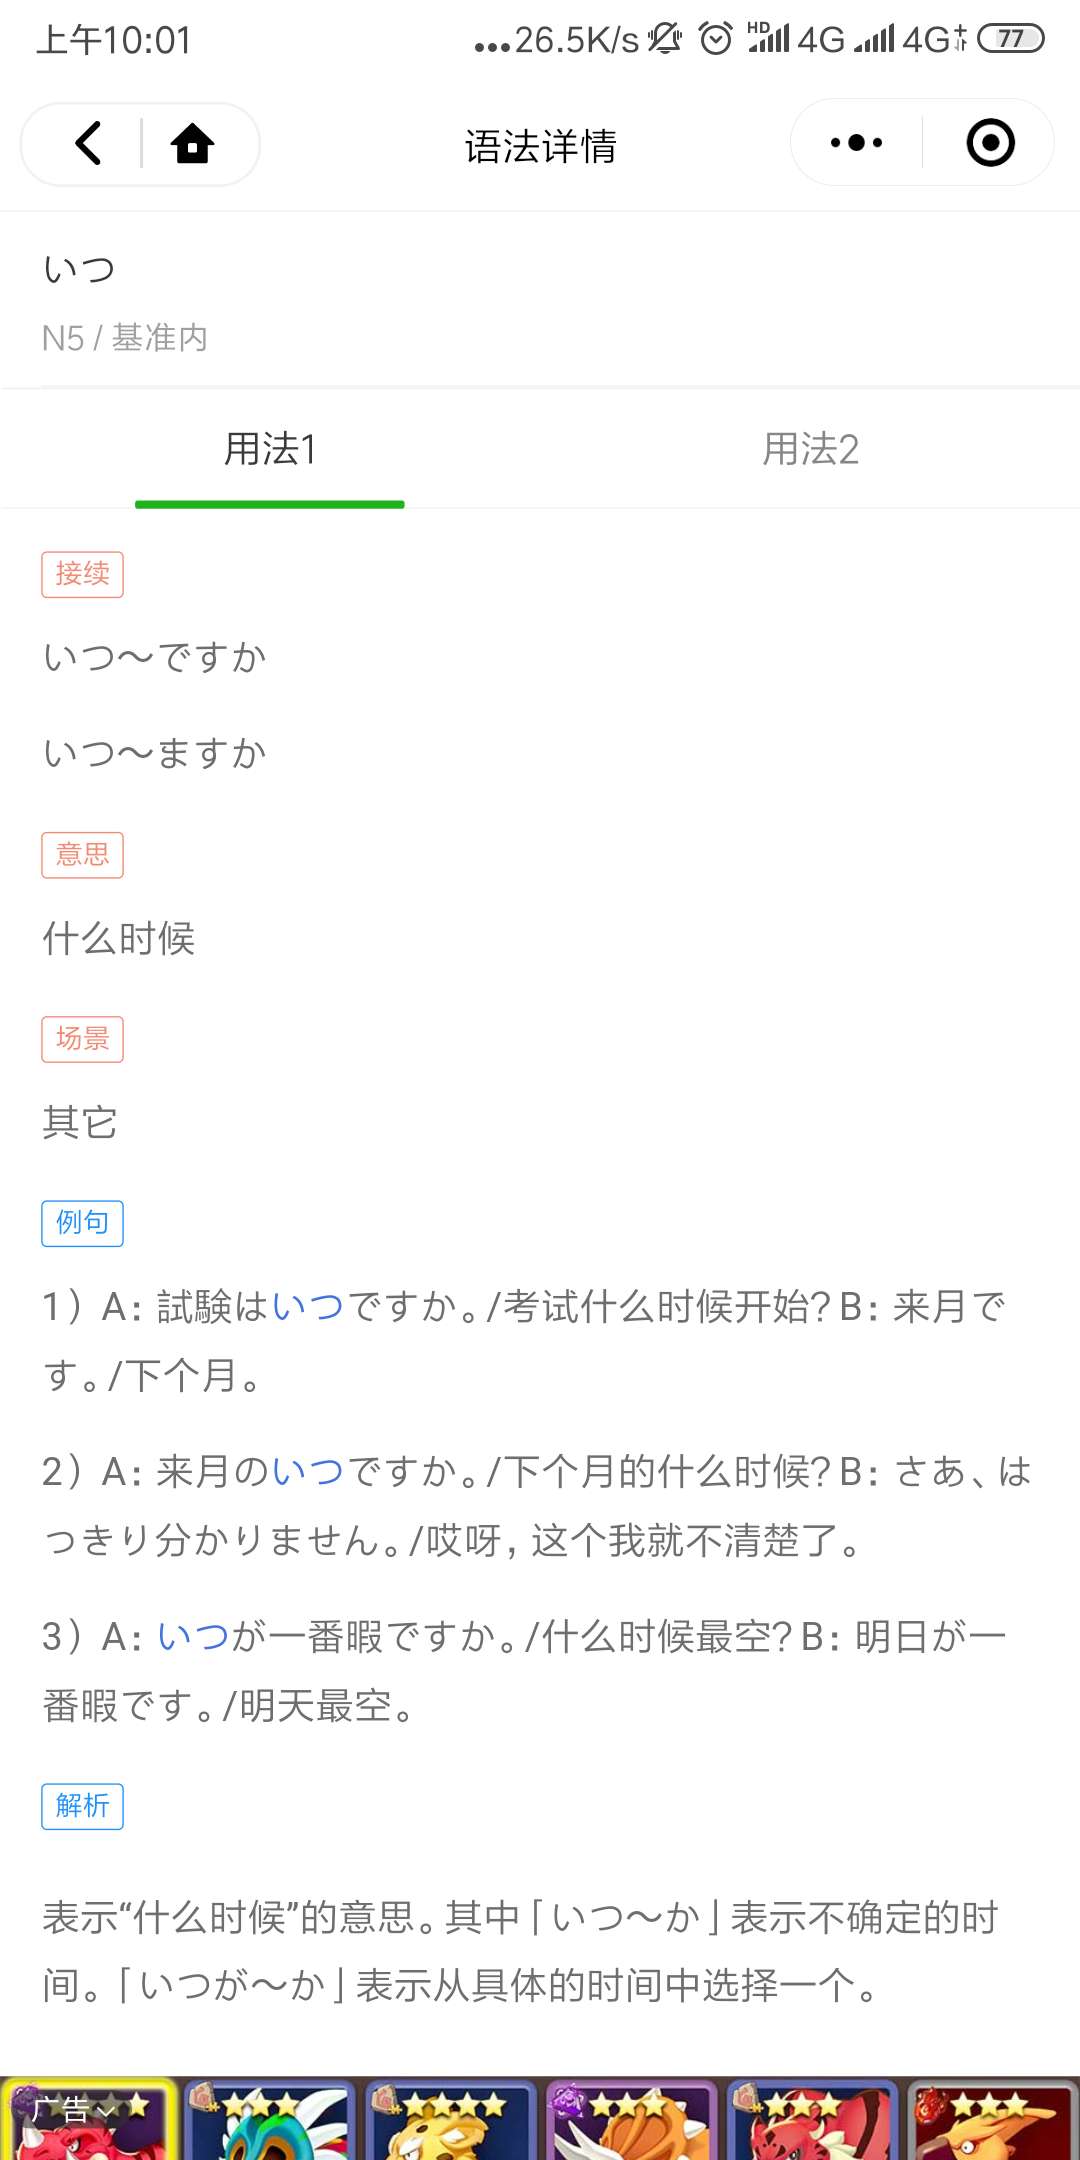 日语语法库_日语语法库小程序_日语语法库微信小程序